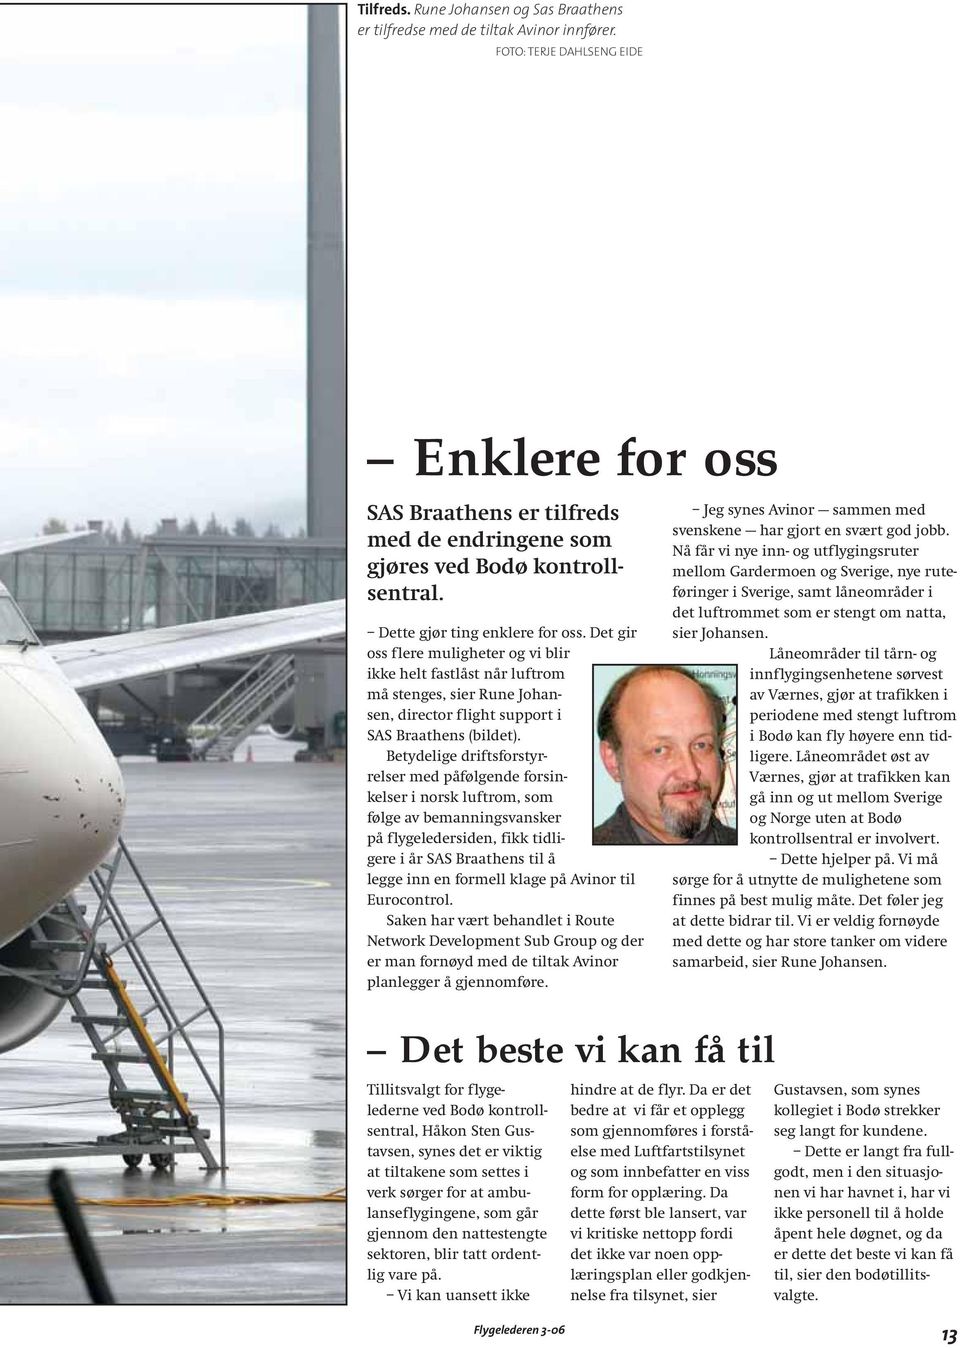 Det gir oss flere muligheter og vi blir ikke helt fastlåst når luftrom må stenges, sier Rune Johansen, director flight support i SAS Braathens (bildet).